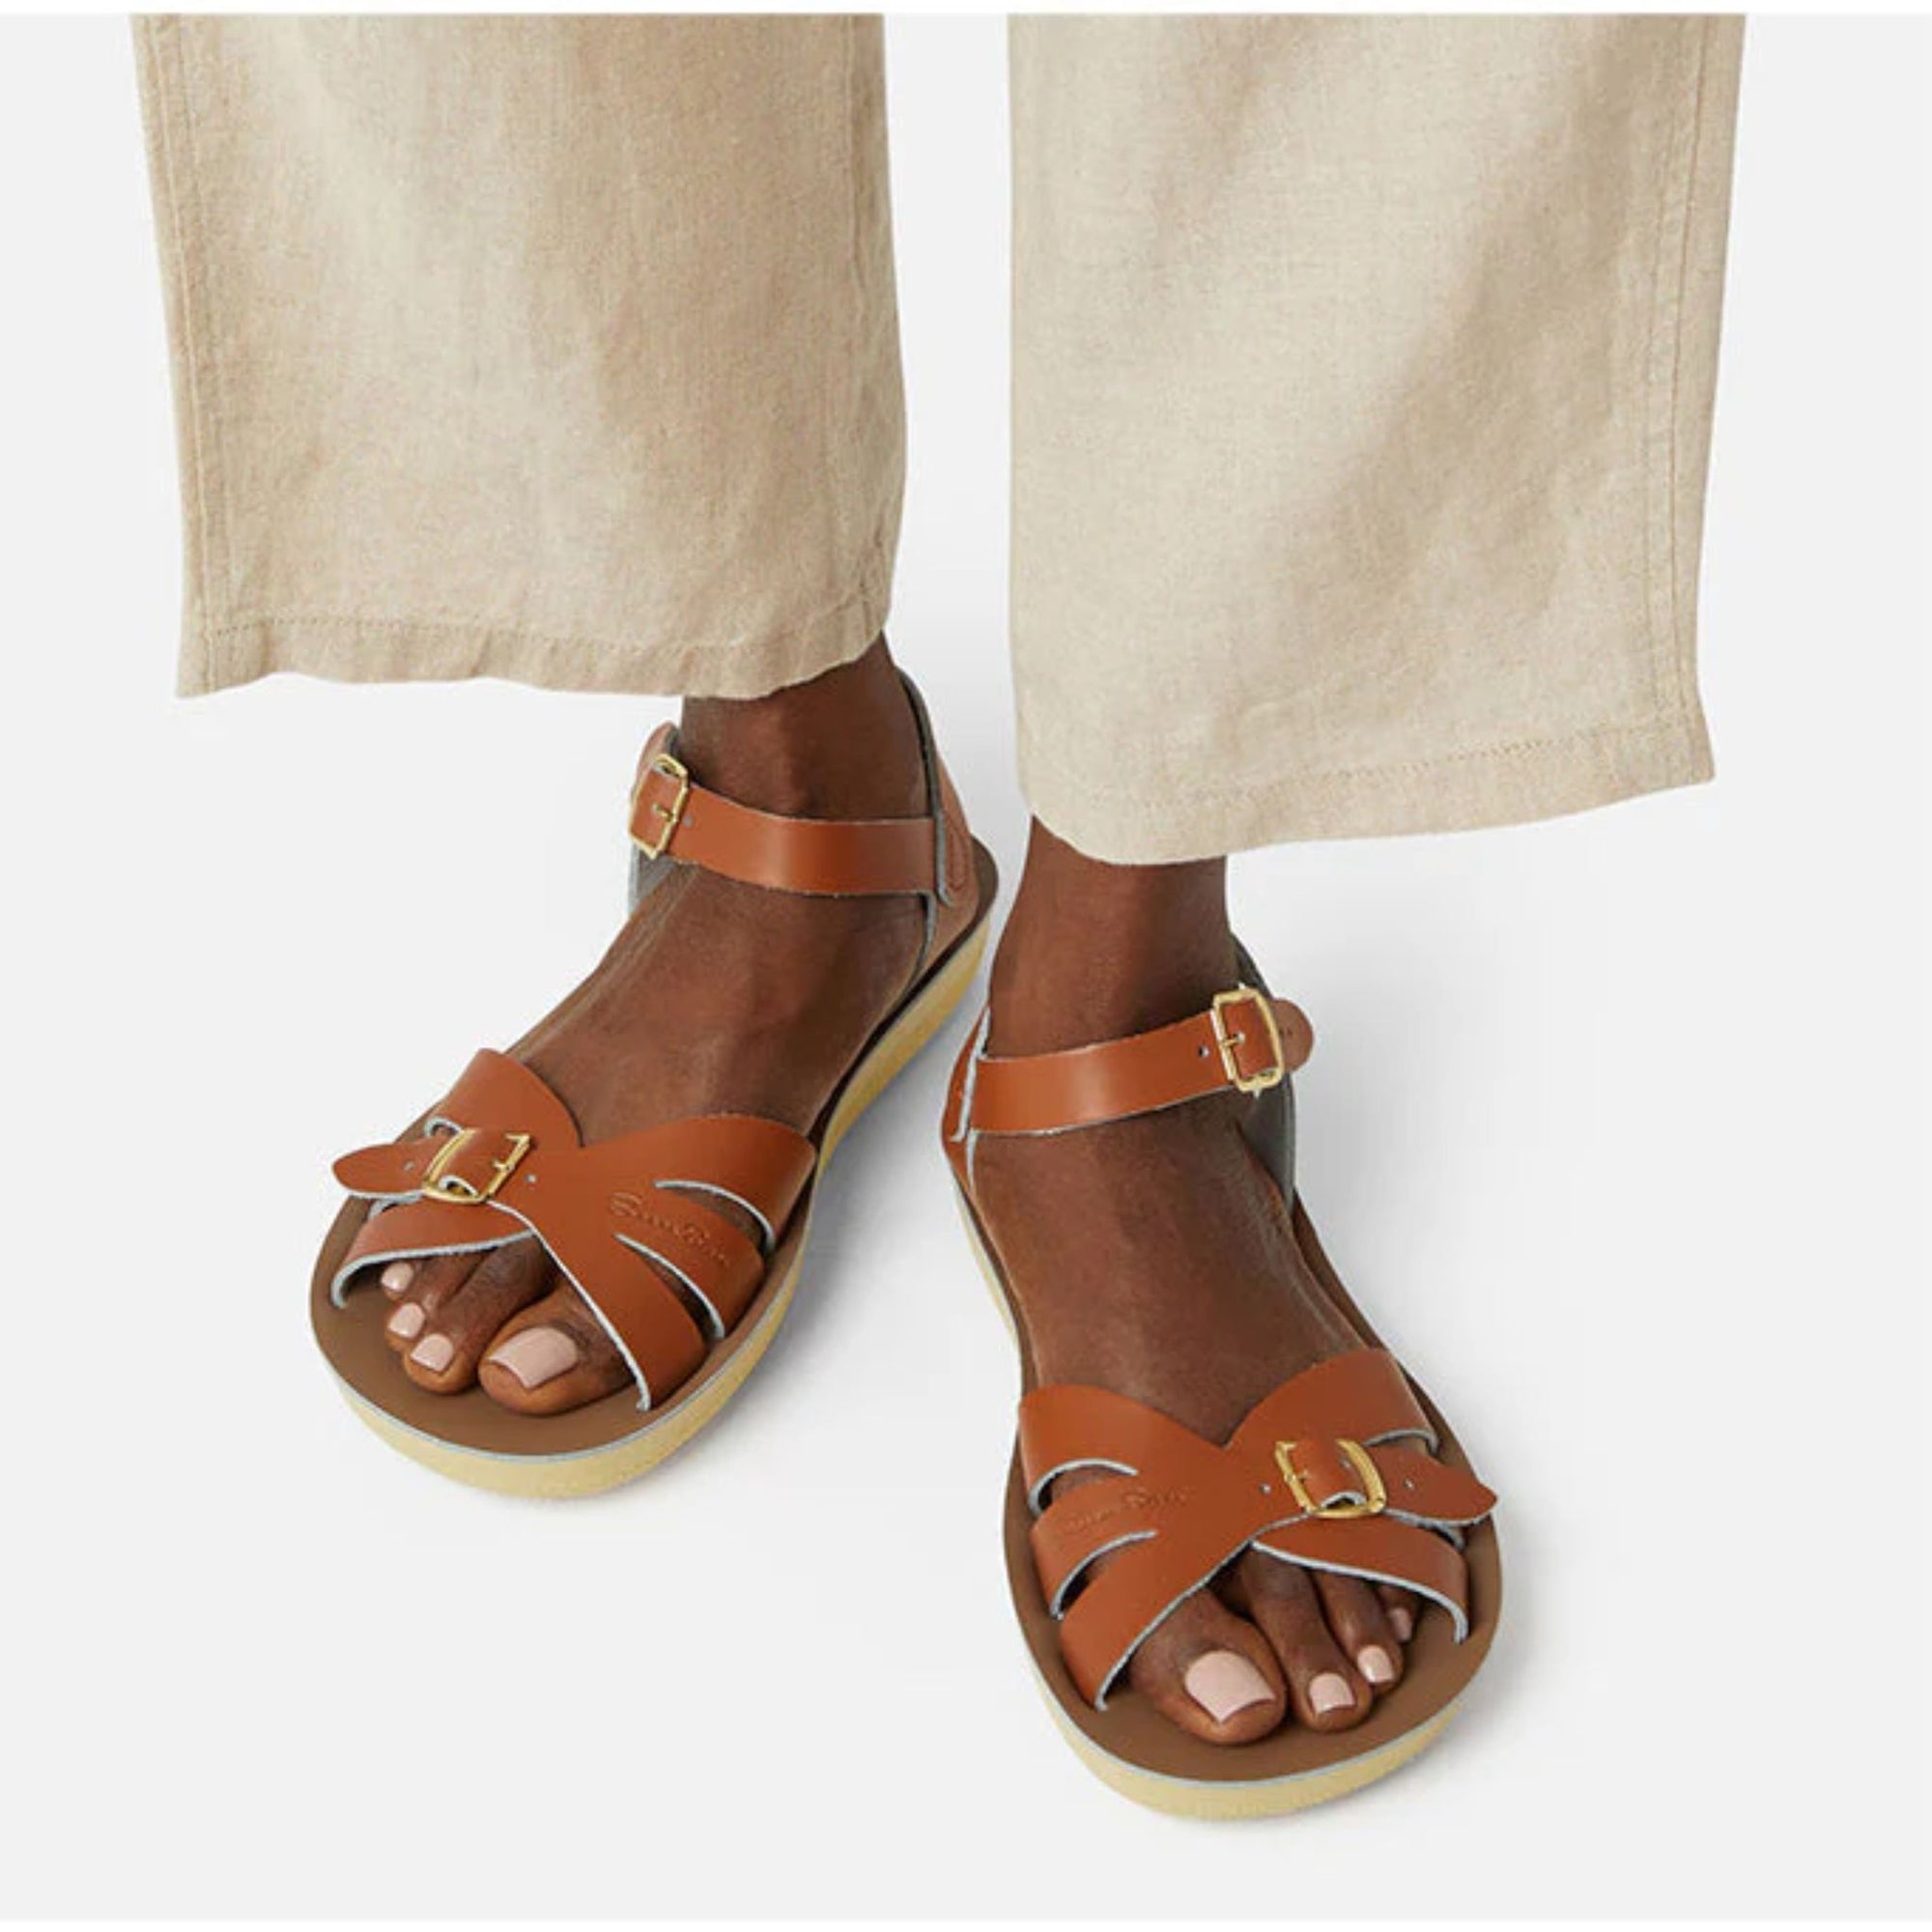 Salt-water Sandals Boardwalk Adult - Tan